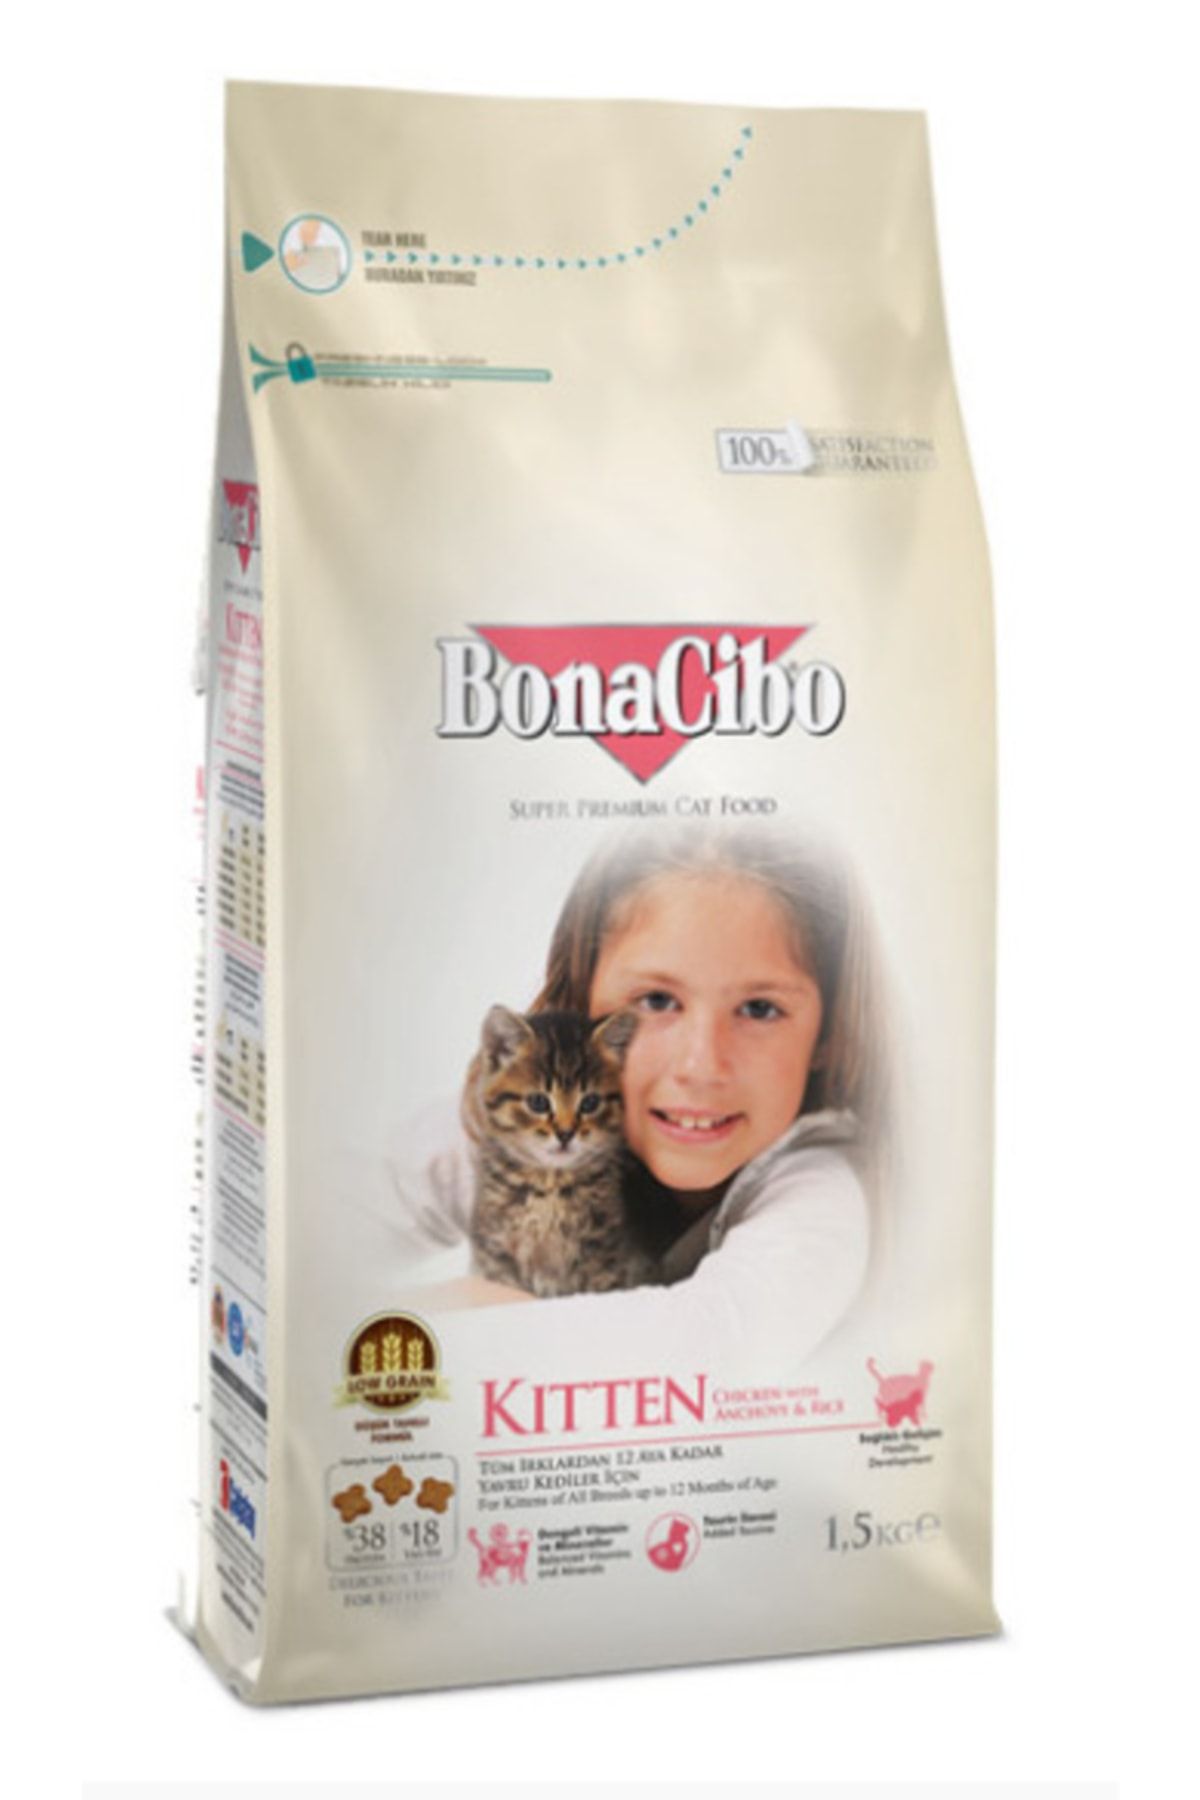 BonaCibo Kitten Tavuklu (Hamsi Ve Pirinç Eşliğinde) Yavru Kedi Maması 1,5 Kilo